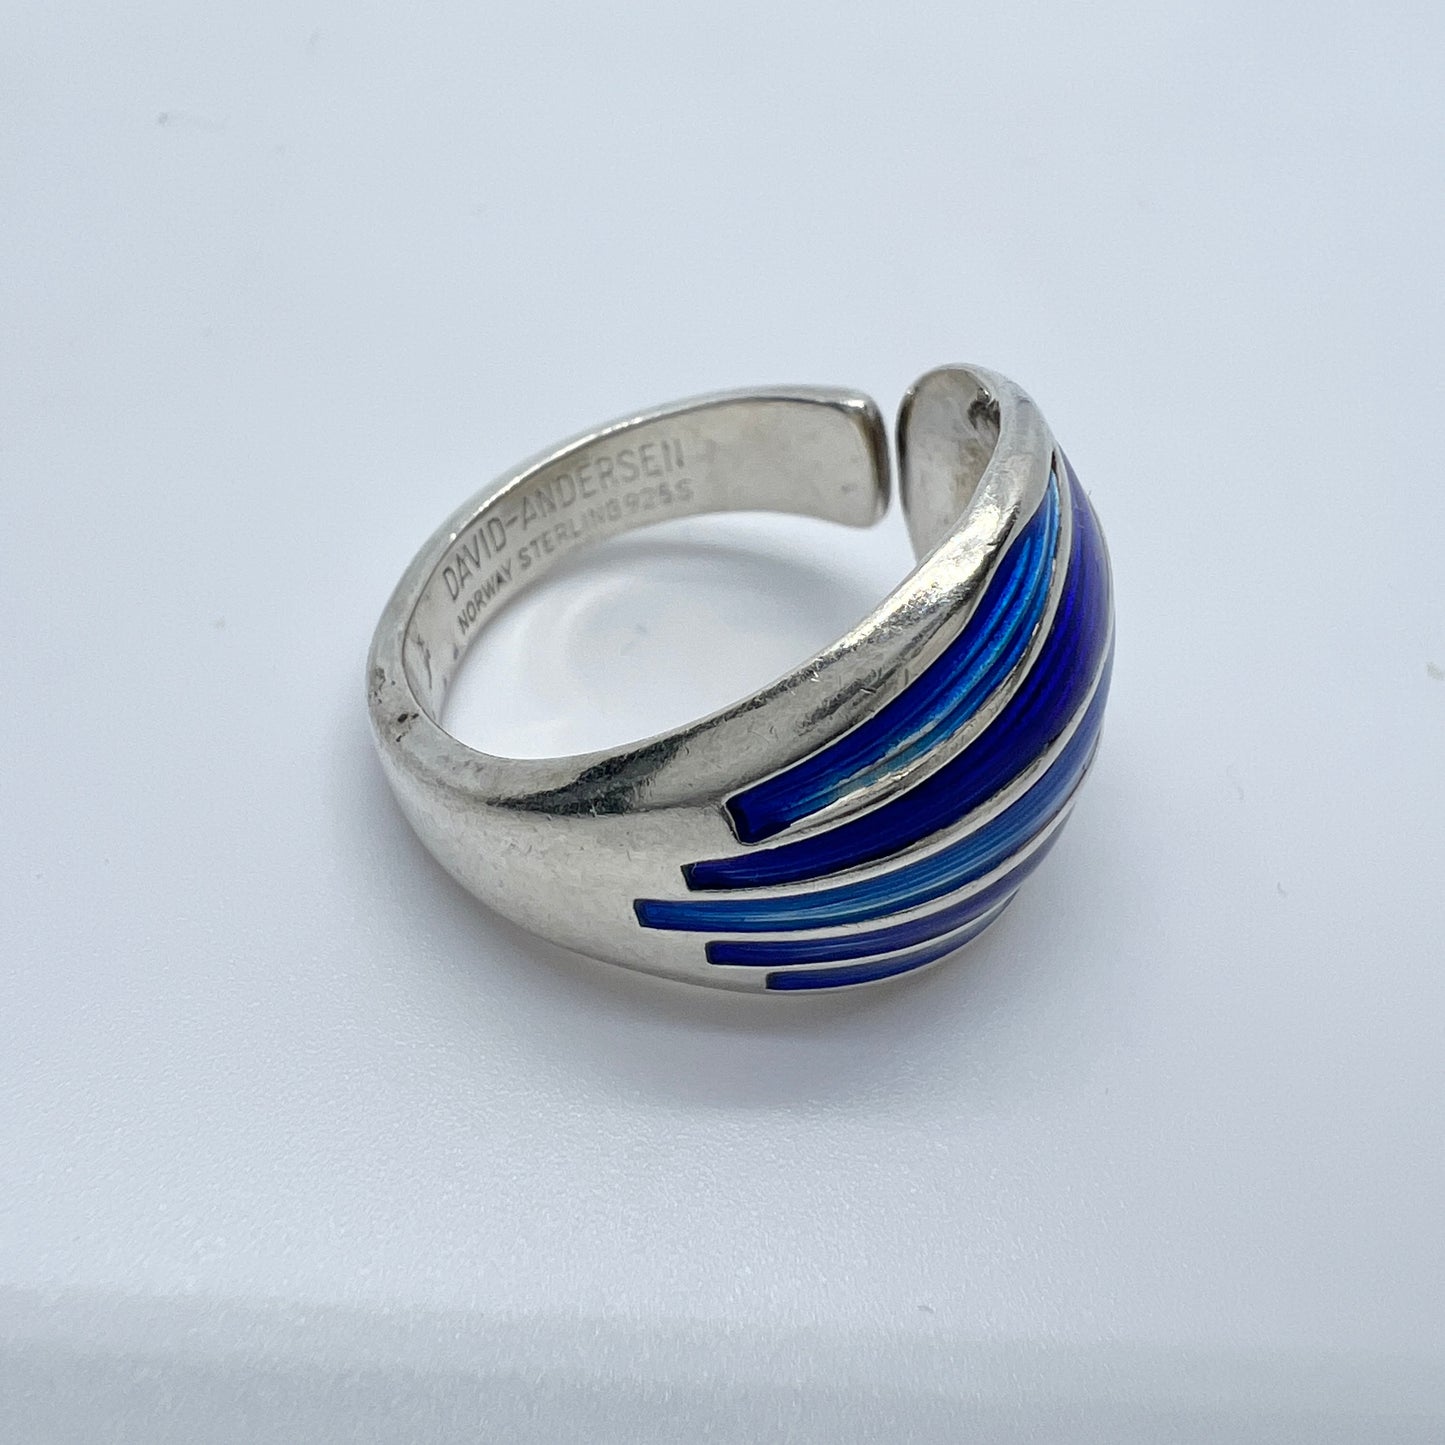 David-Andersen, Norway. Vintage Sterling Silver Blue Enamel Ring.